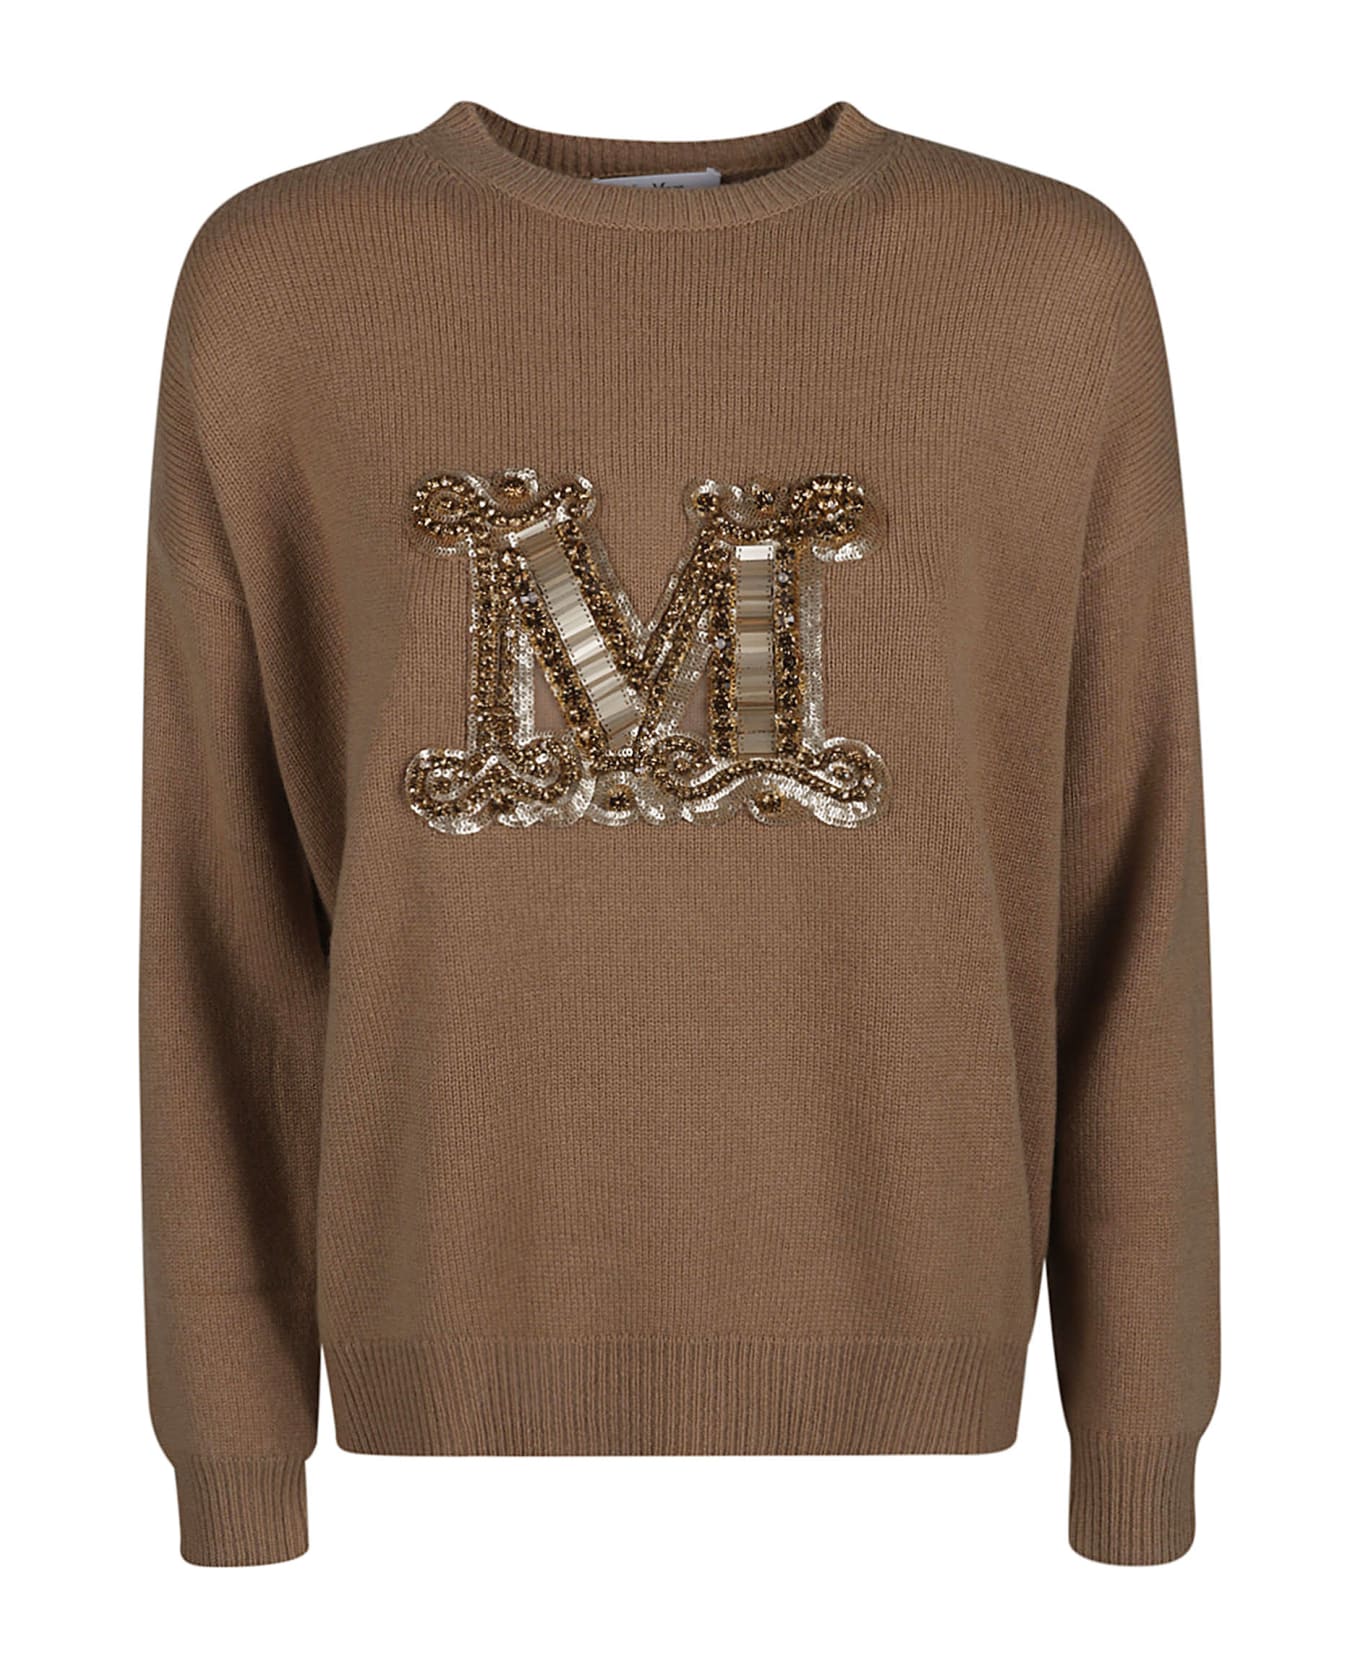 Max Mara Logo Sweater - Camel ニットウェア